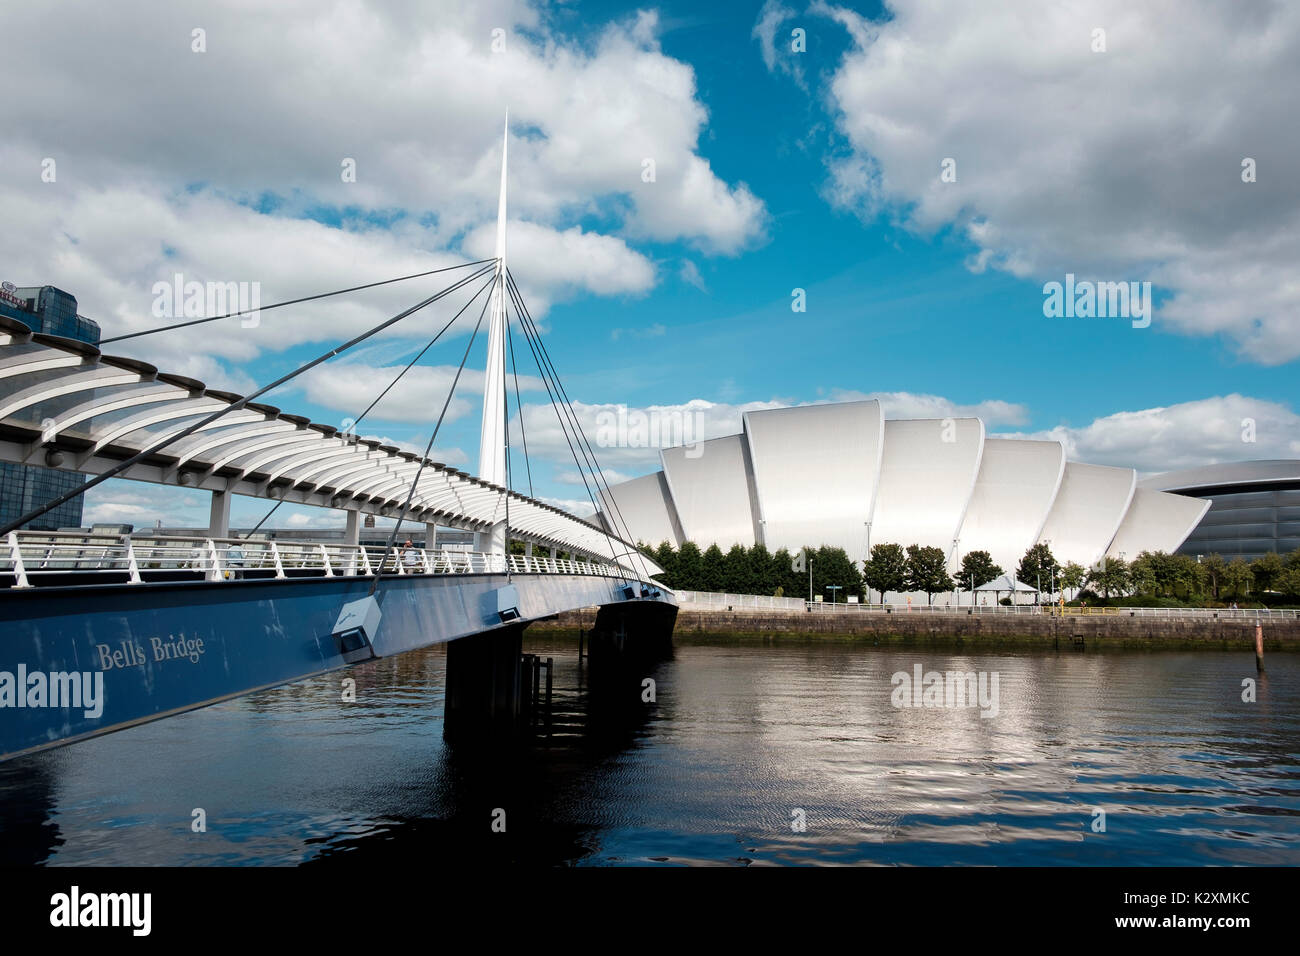 Le développement de l'architecture moderne SEC salle de concert avec Armadillo Bell's pont traversant la rivière Clyde à Glasgow, Ecosse Banque D'Images